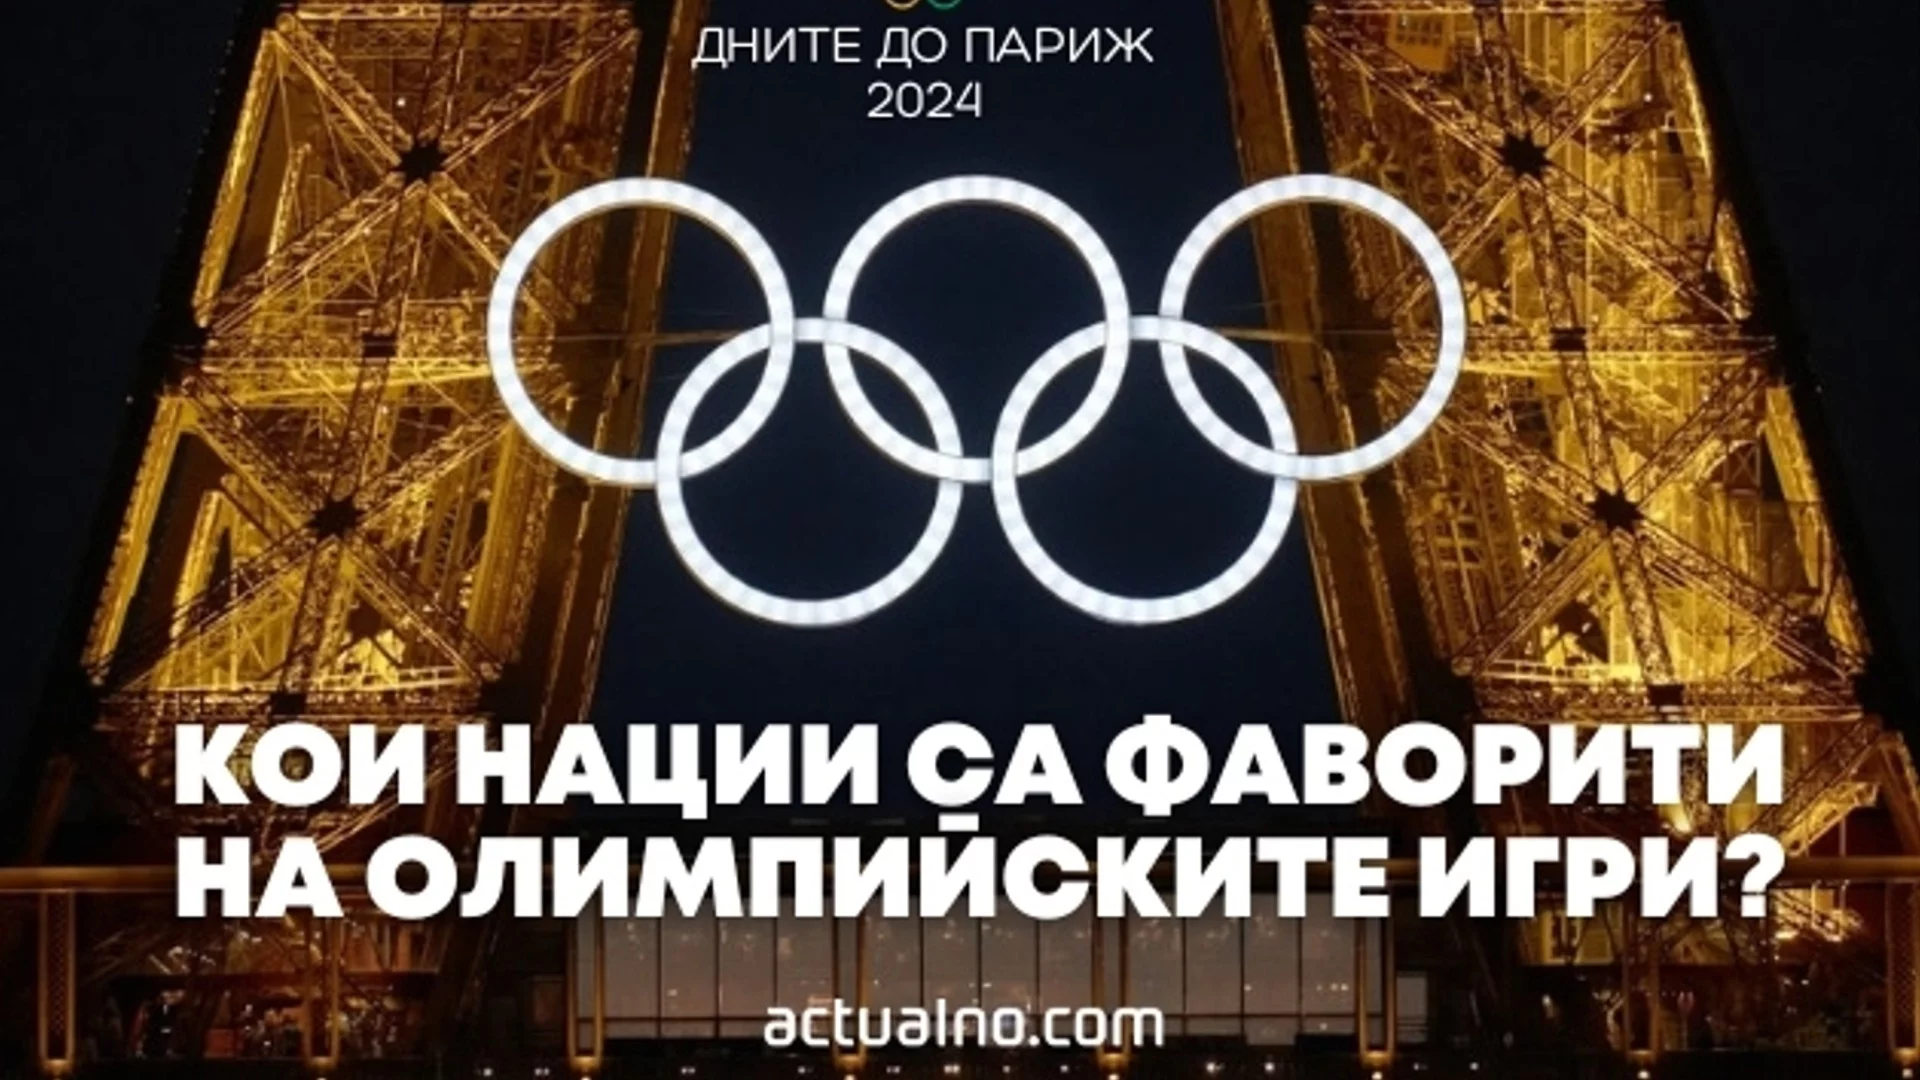 14 дни до Париж 2024: Кои нации са фаворити на Олимпийските игри?